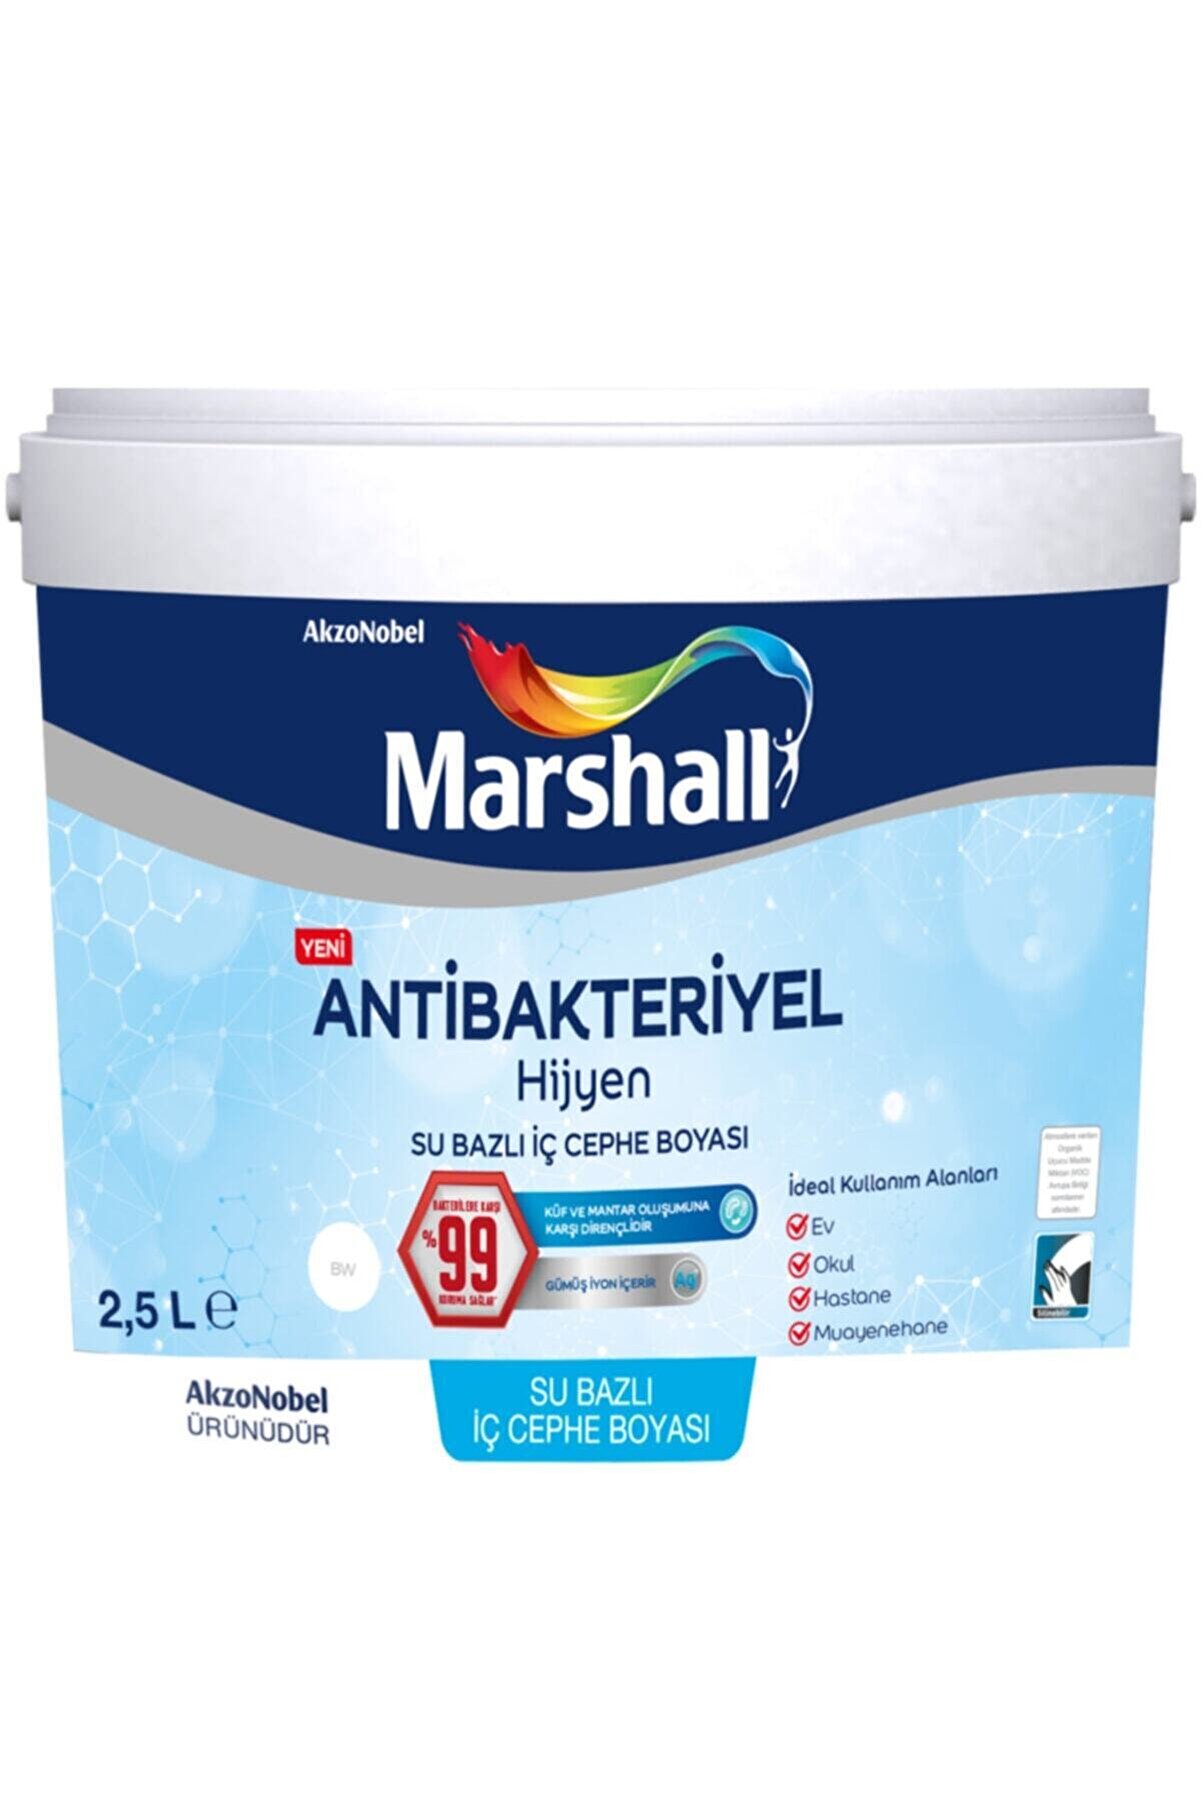 Marshall Antibakteriyel Hijyen Iç Cephe Duvar Boyası 2,5 Lt Kekik Yağı